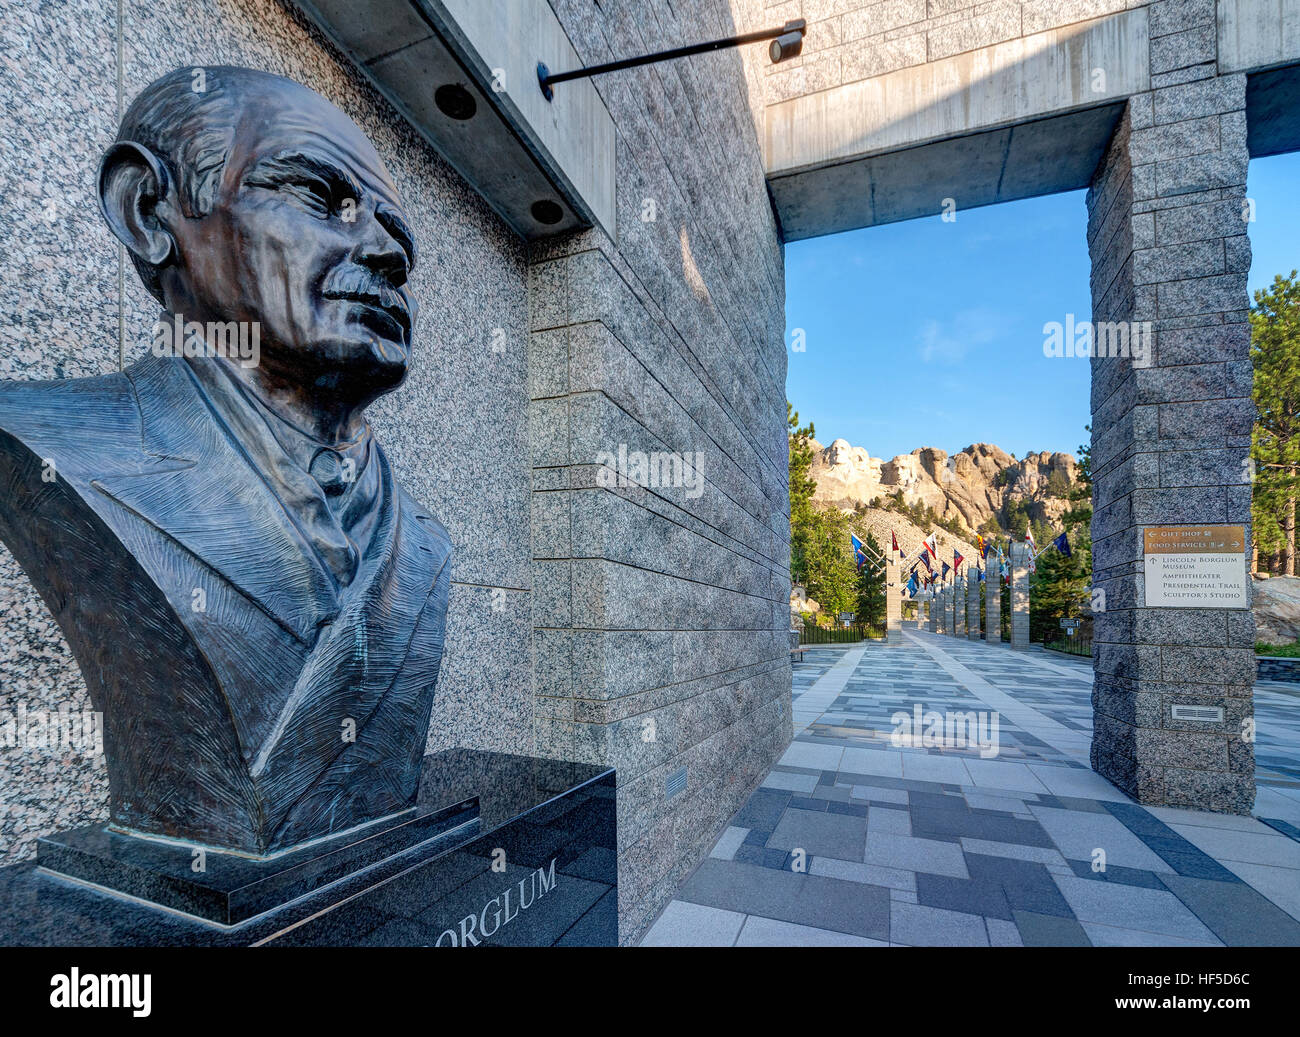 Mount Rushmore National Memorial Visitor's Center avec portrait buste de Gutzon Borglum sculpteur de Mt Rushmore, visible au loin. Banque D'Images